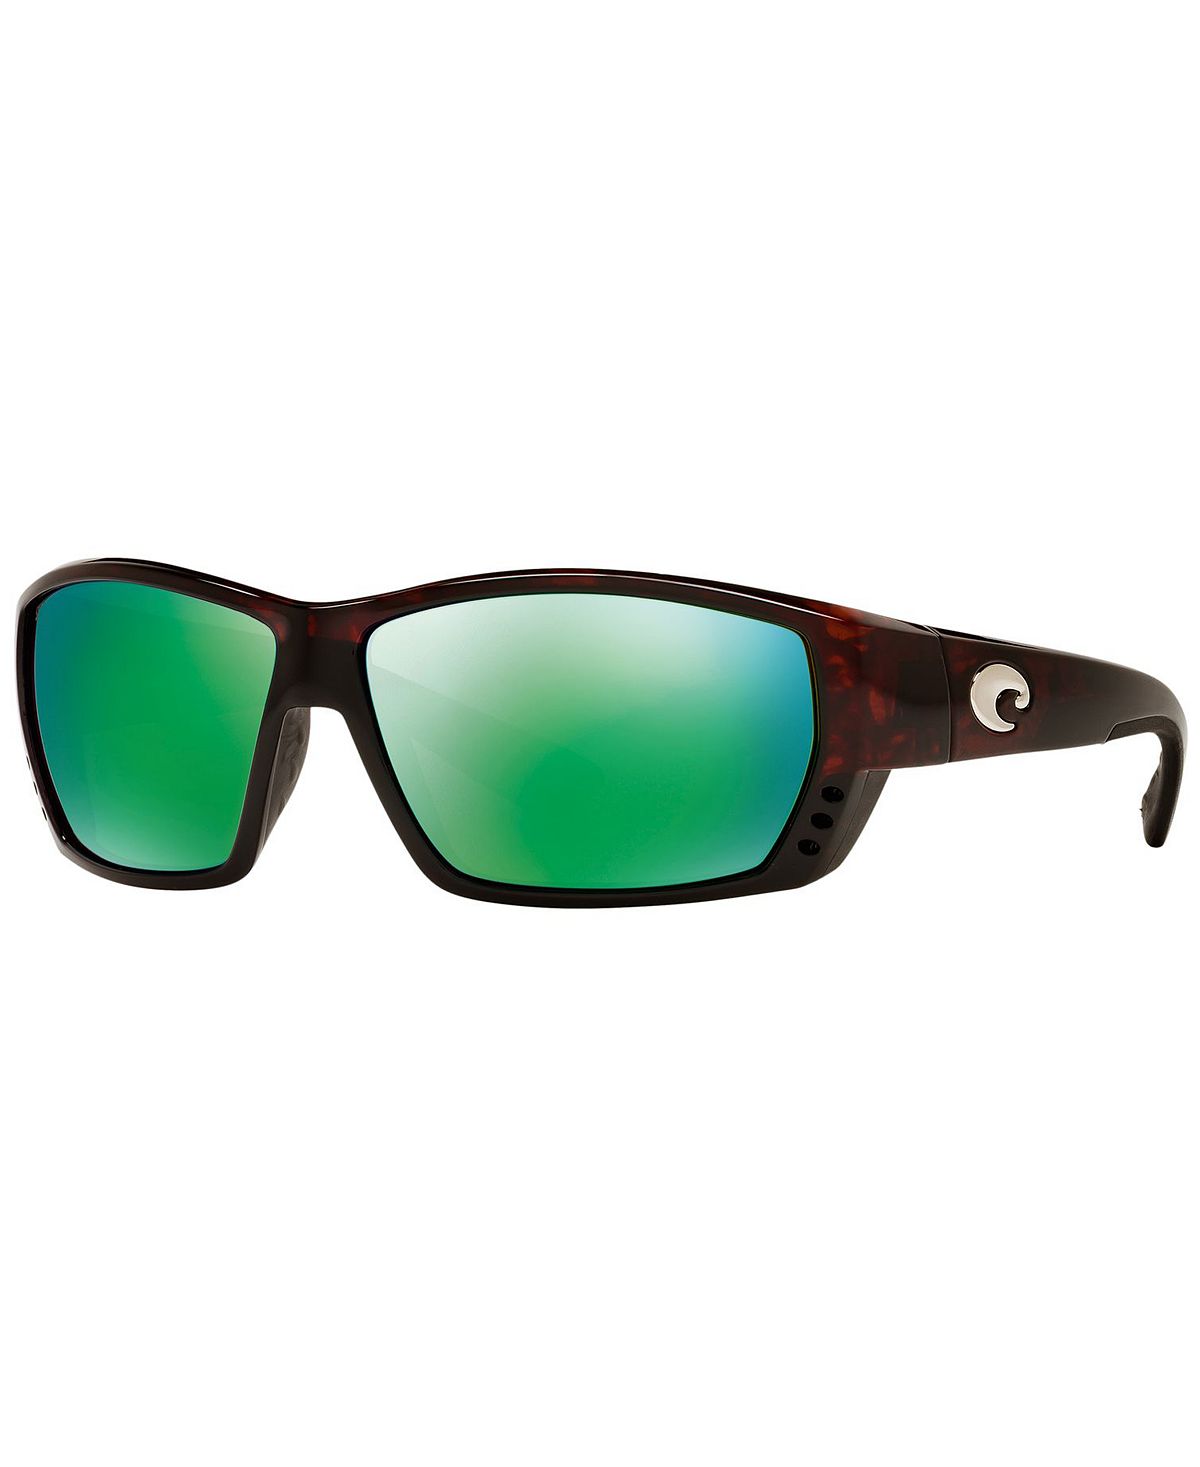 Поляризованные солнцезащитные очки, TUNA ALLEY Costa Del Mar поляризованные солнцезащитные очки tuna alley costa del mar